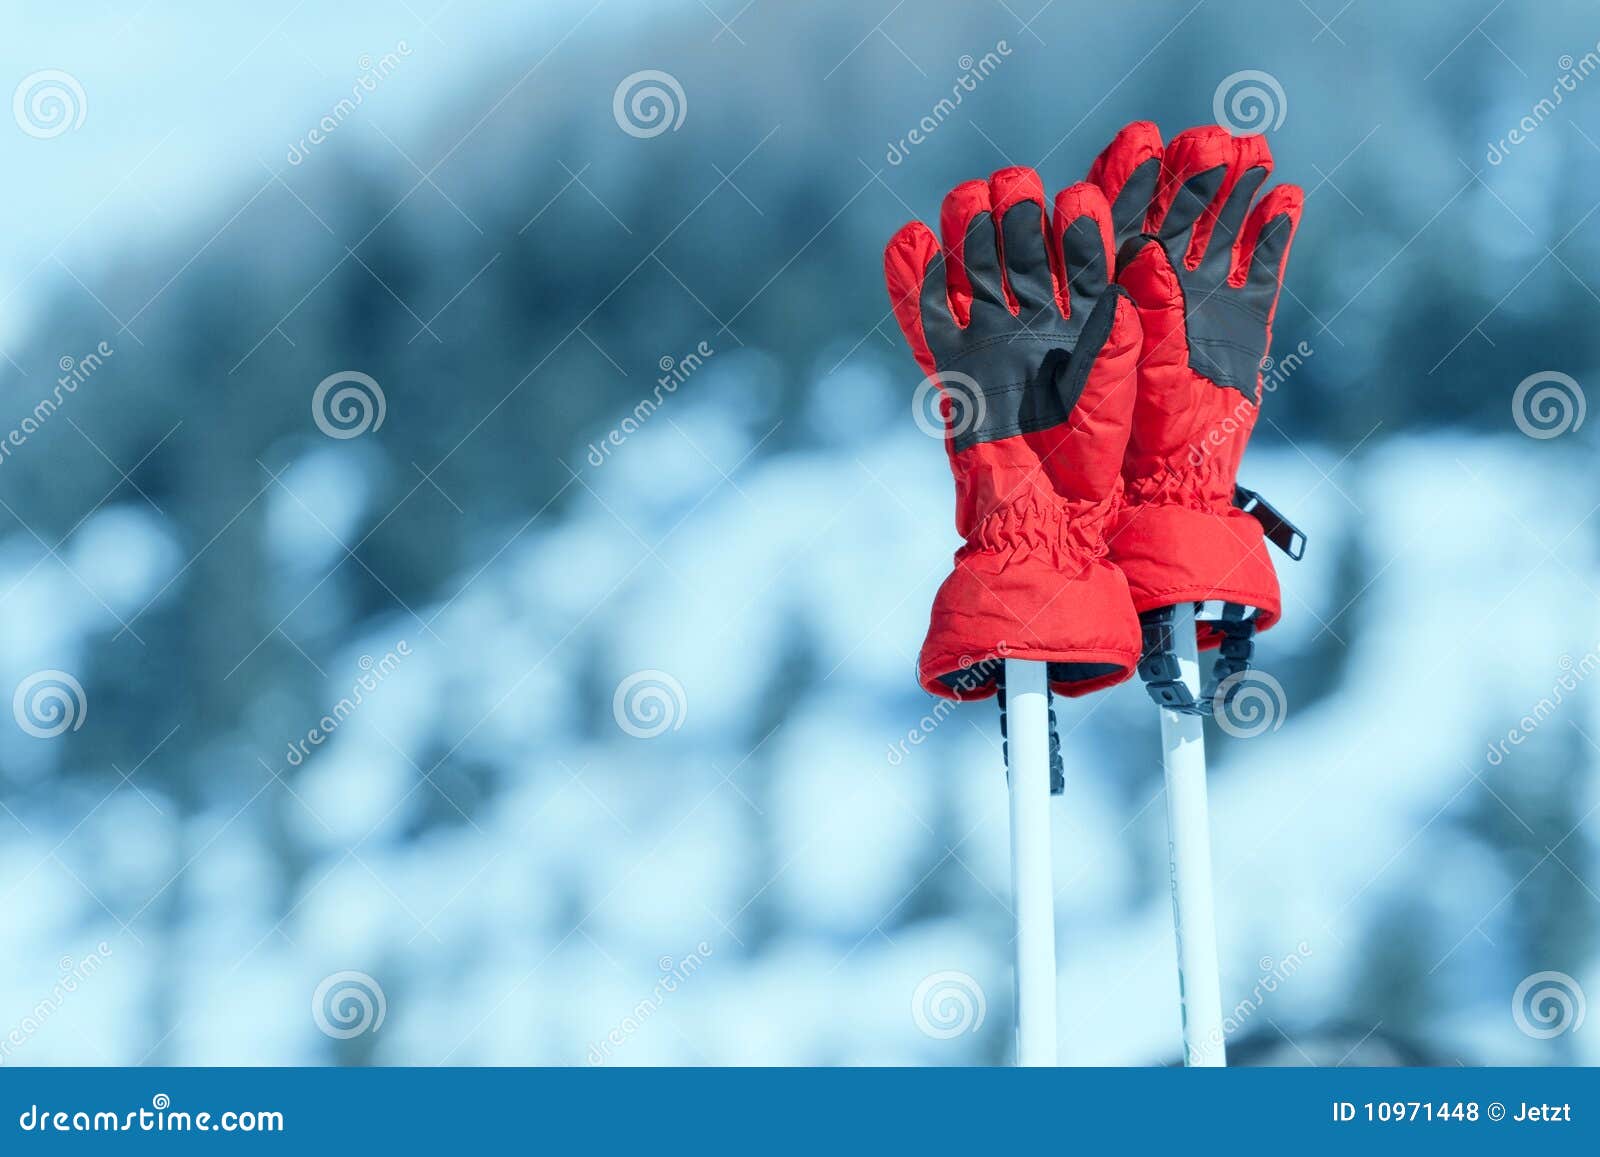 pair of ski gloves